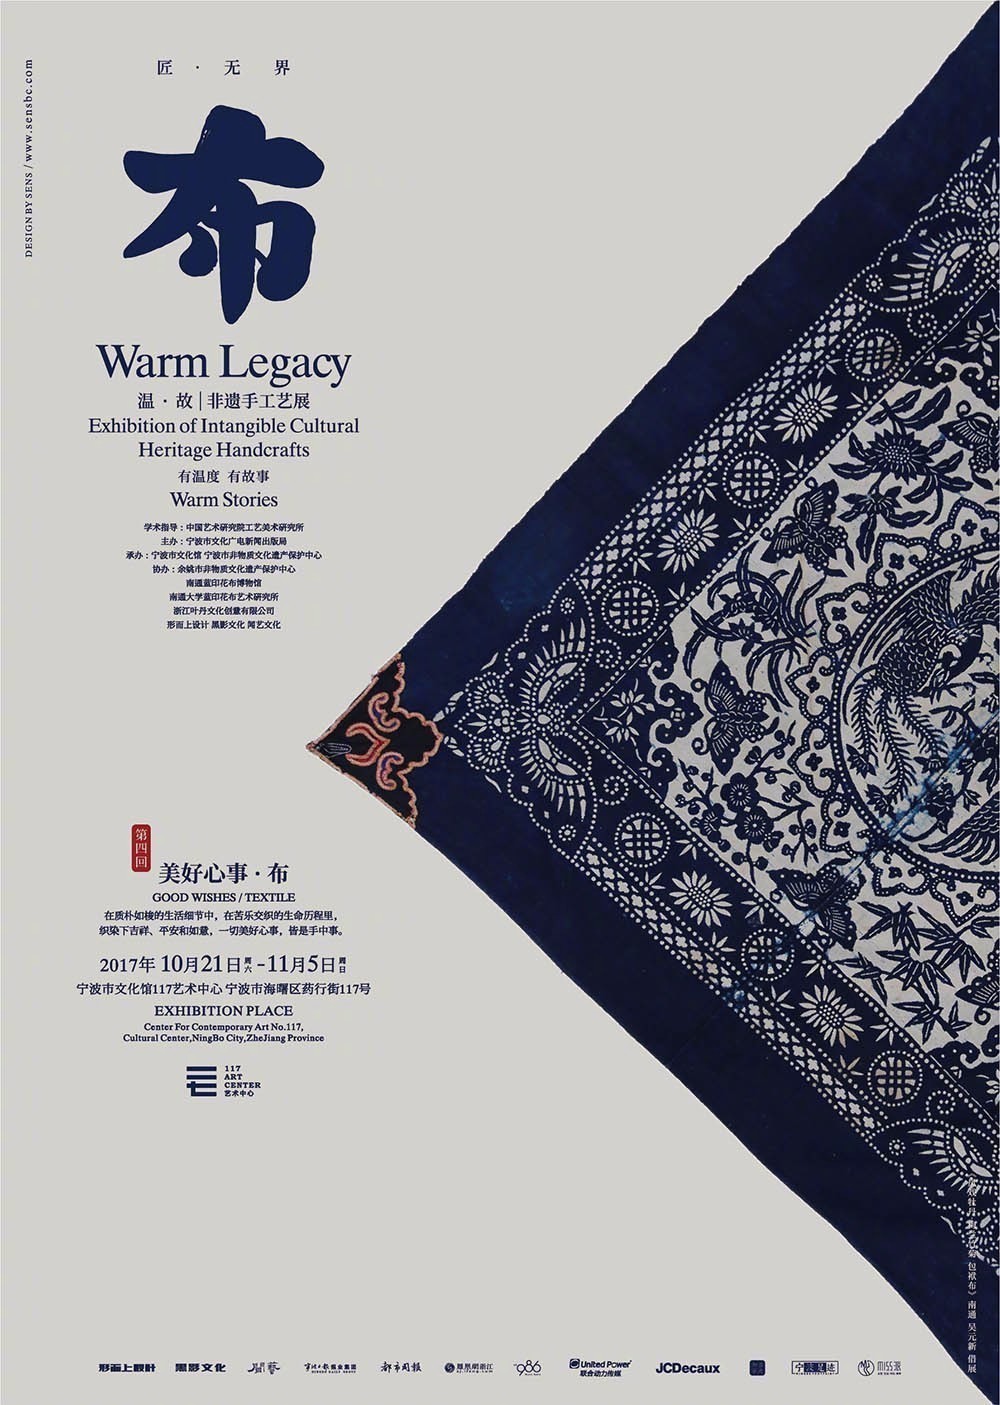 传统文化艺术海报设计,简洁清晰的汉字排版!自己借鉴